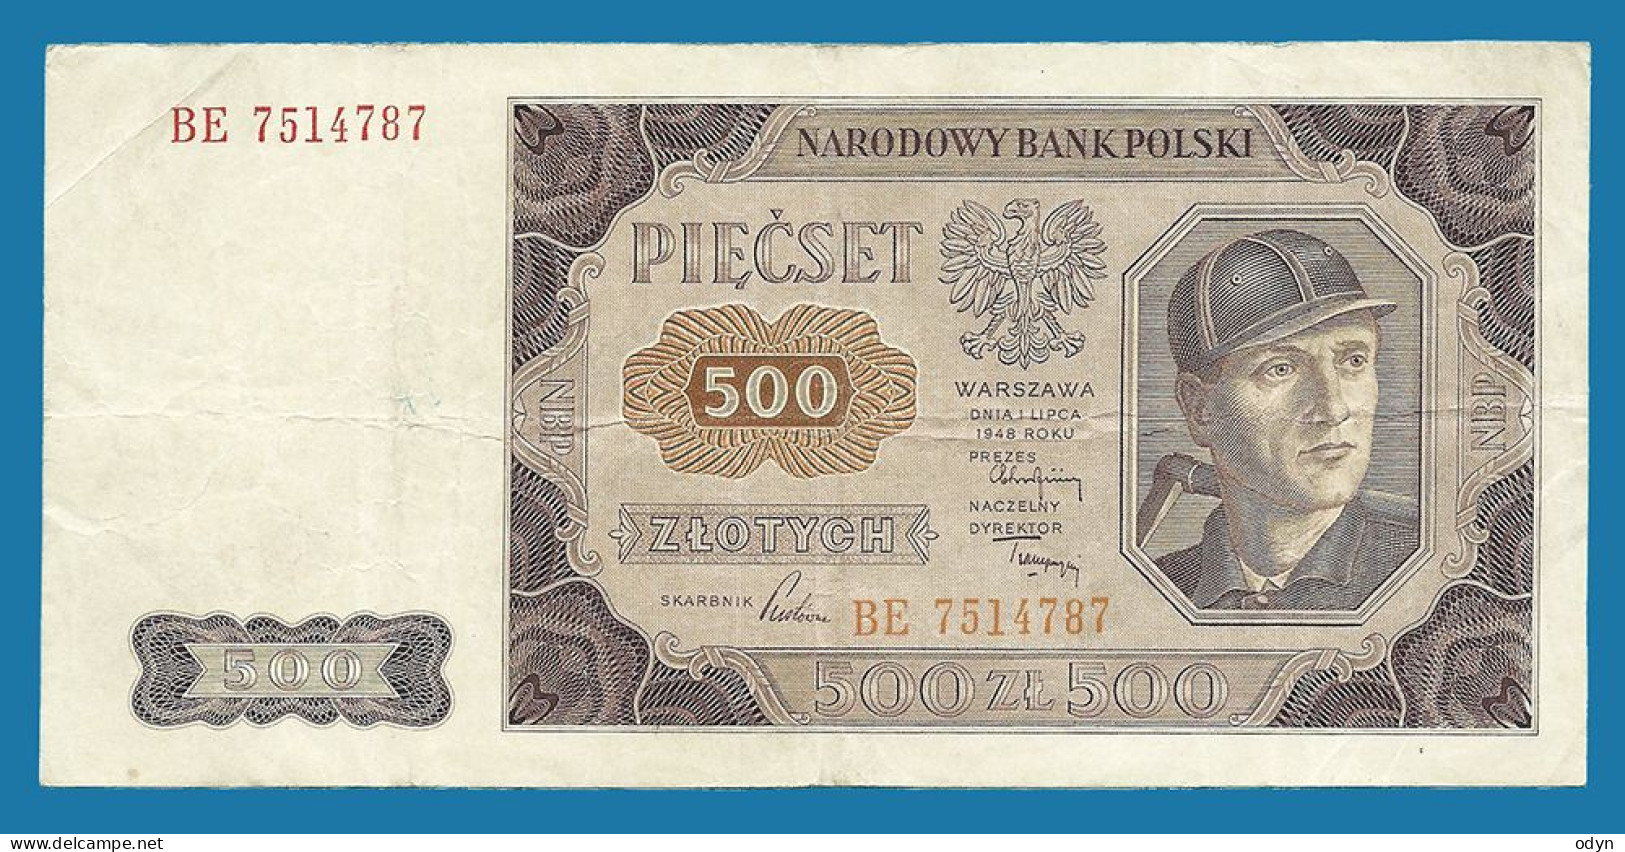 Poland, 1948, 500 Zlotych, Ser. BE 7514787, VF - Polonia